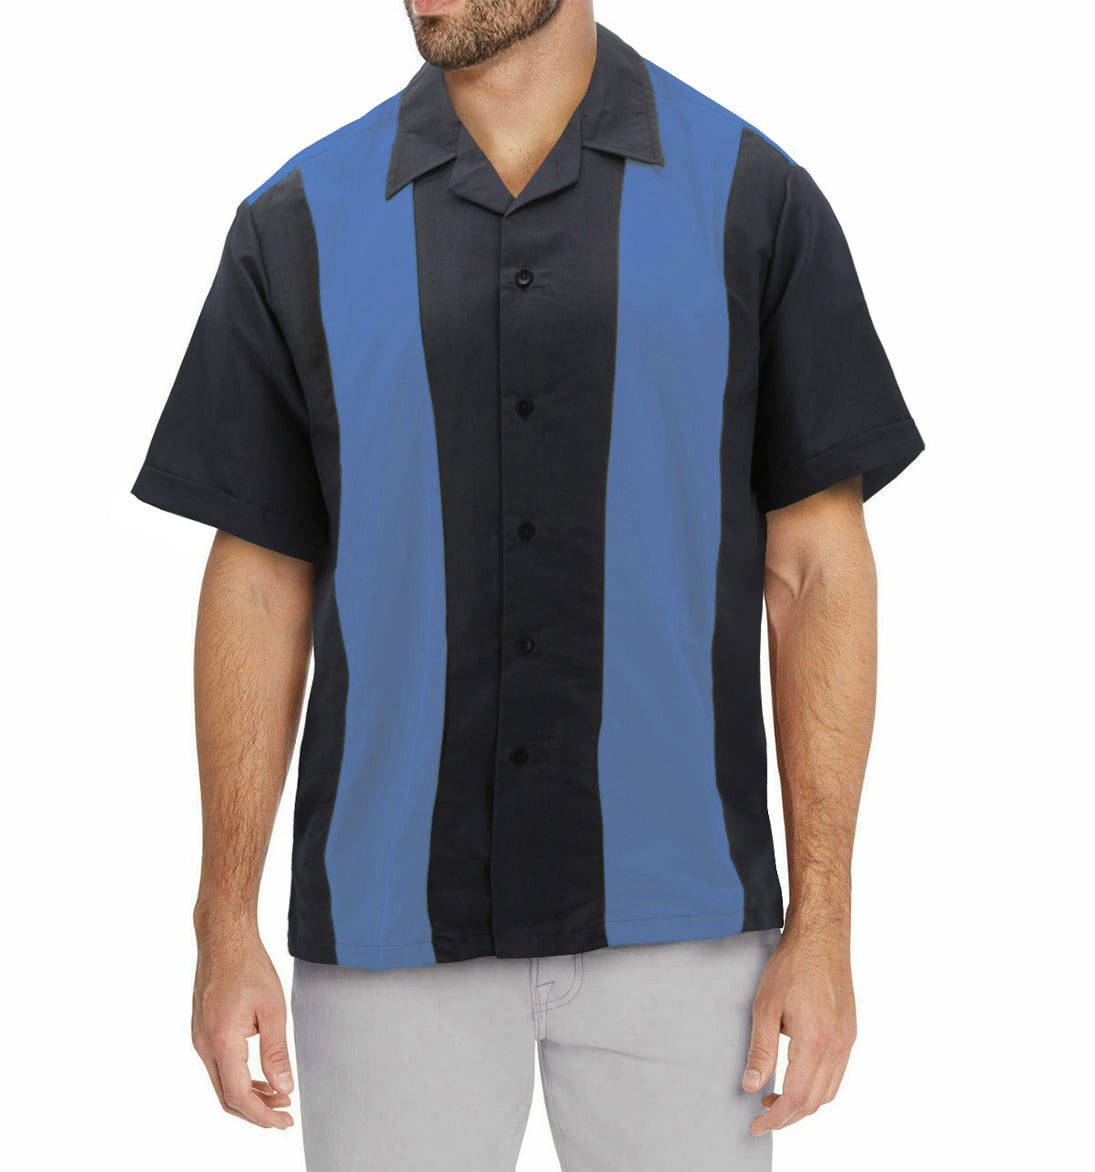 Big Tall Royal Blue on Black Mens Retro Bowling Shirt